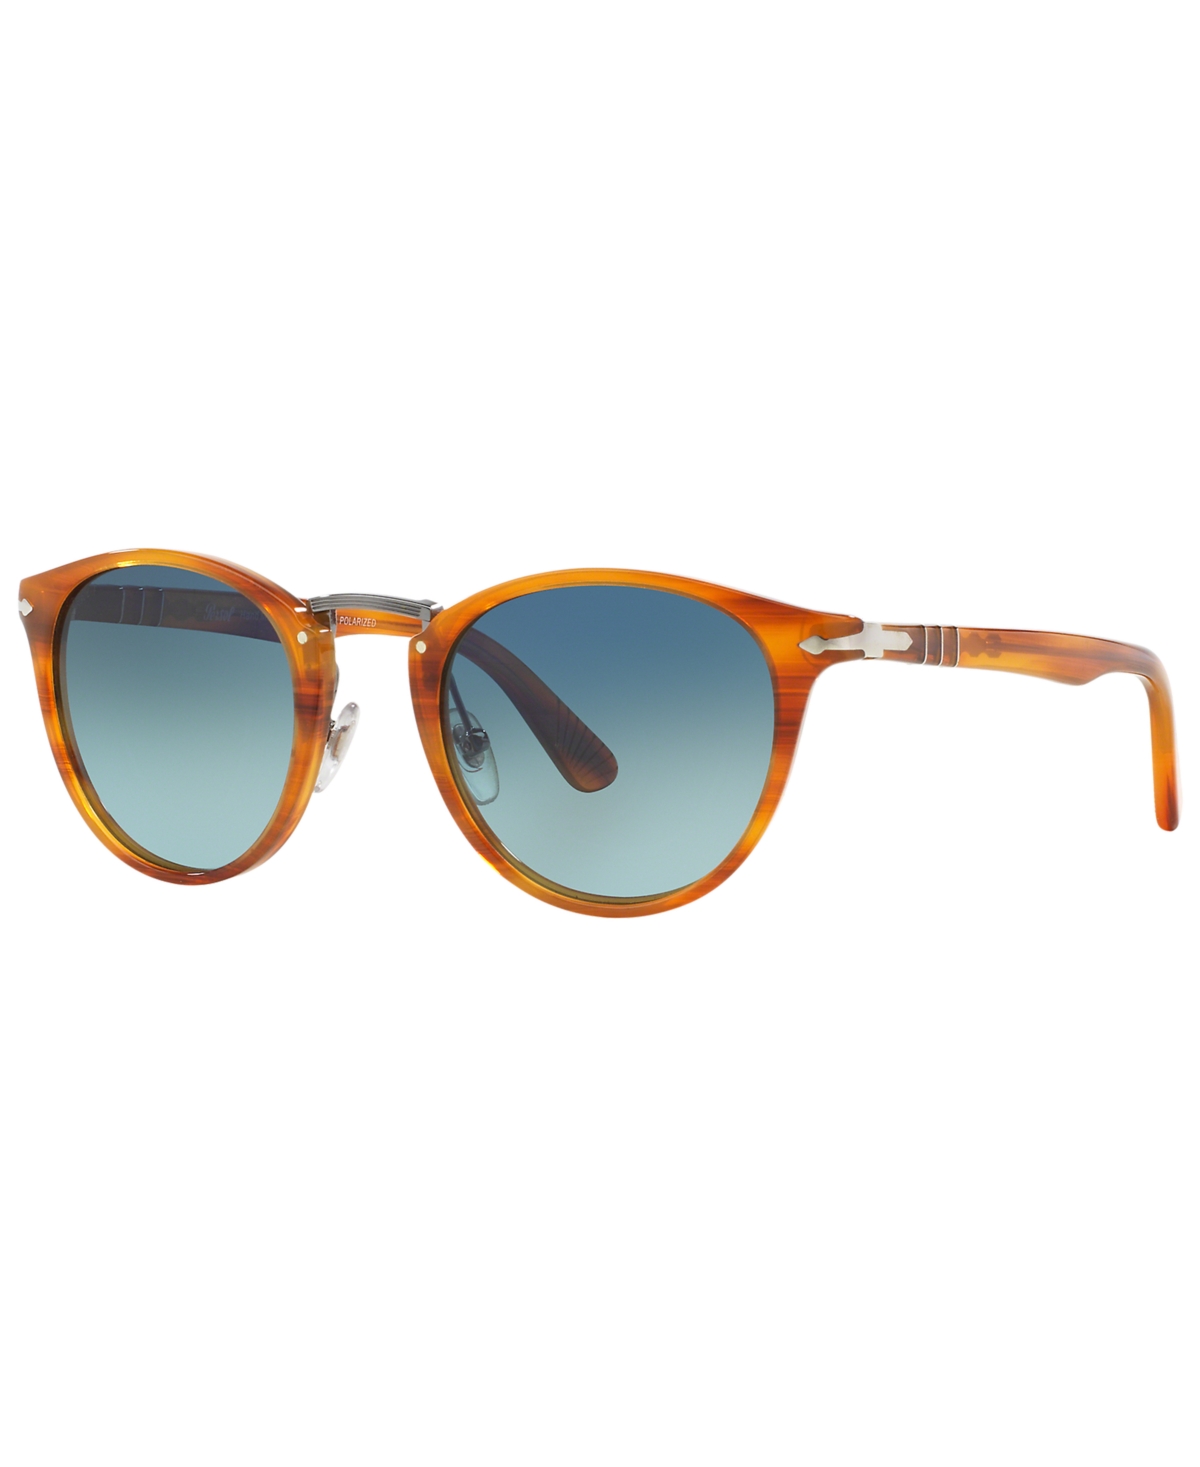 Persol Men's Polarized Sunglasses, Po3108s Gradient In Brown,blue Gradient Polar